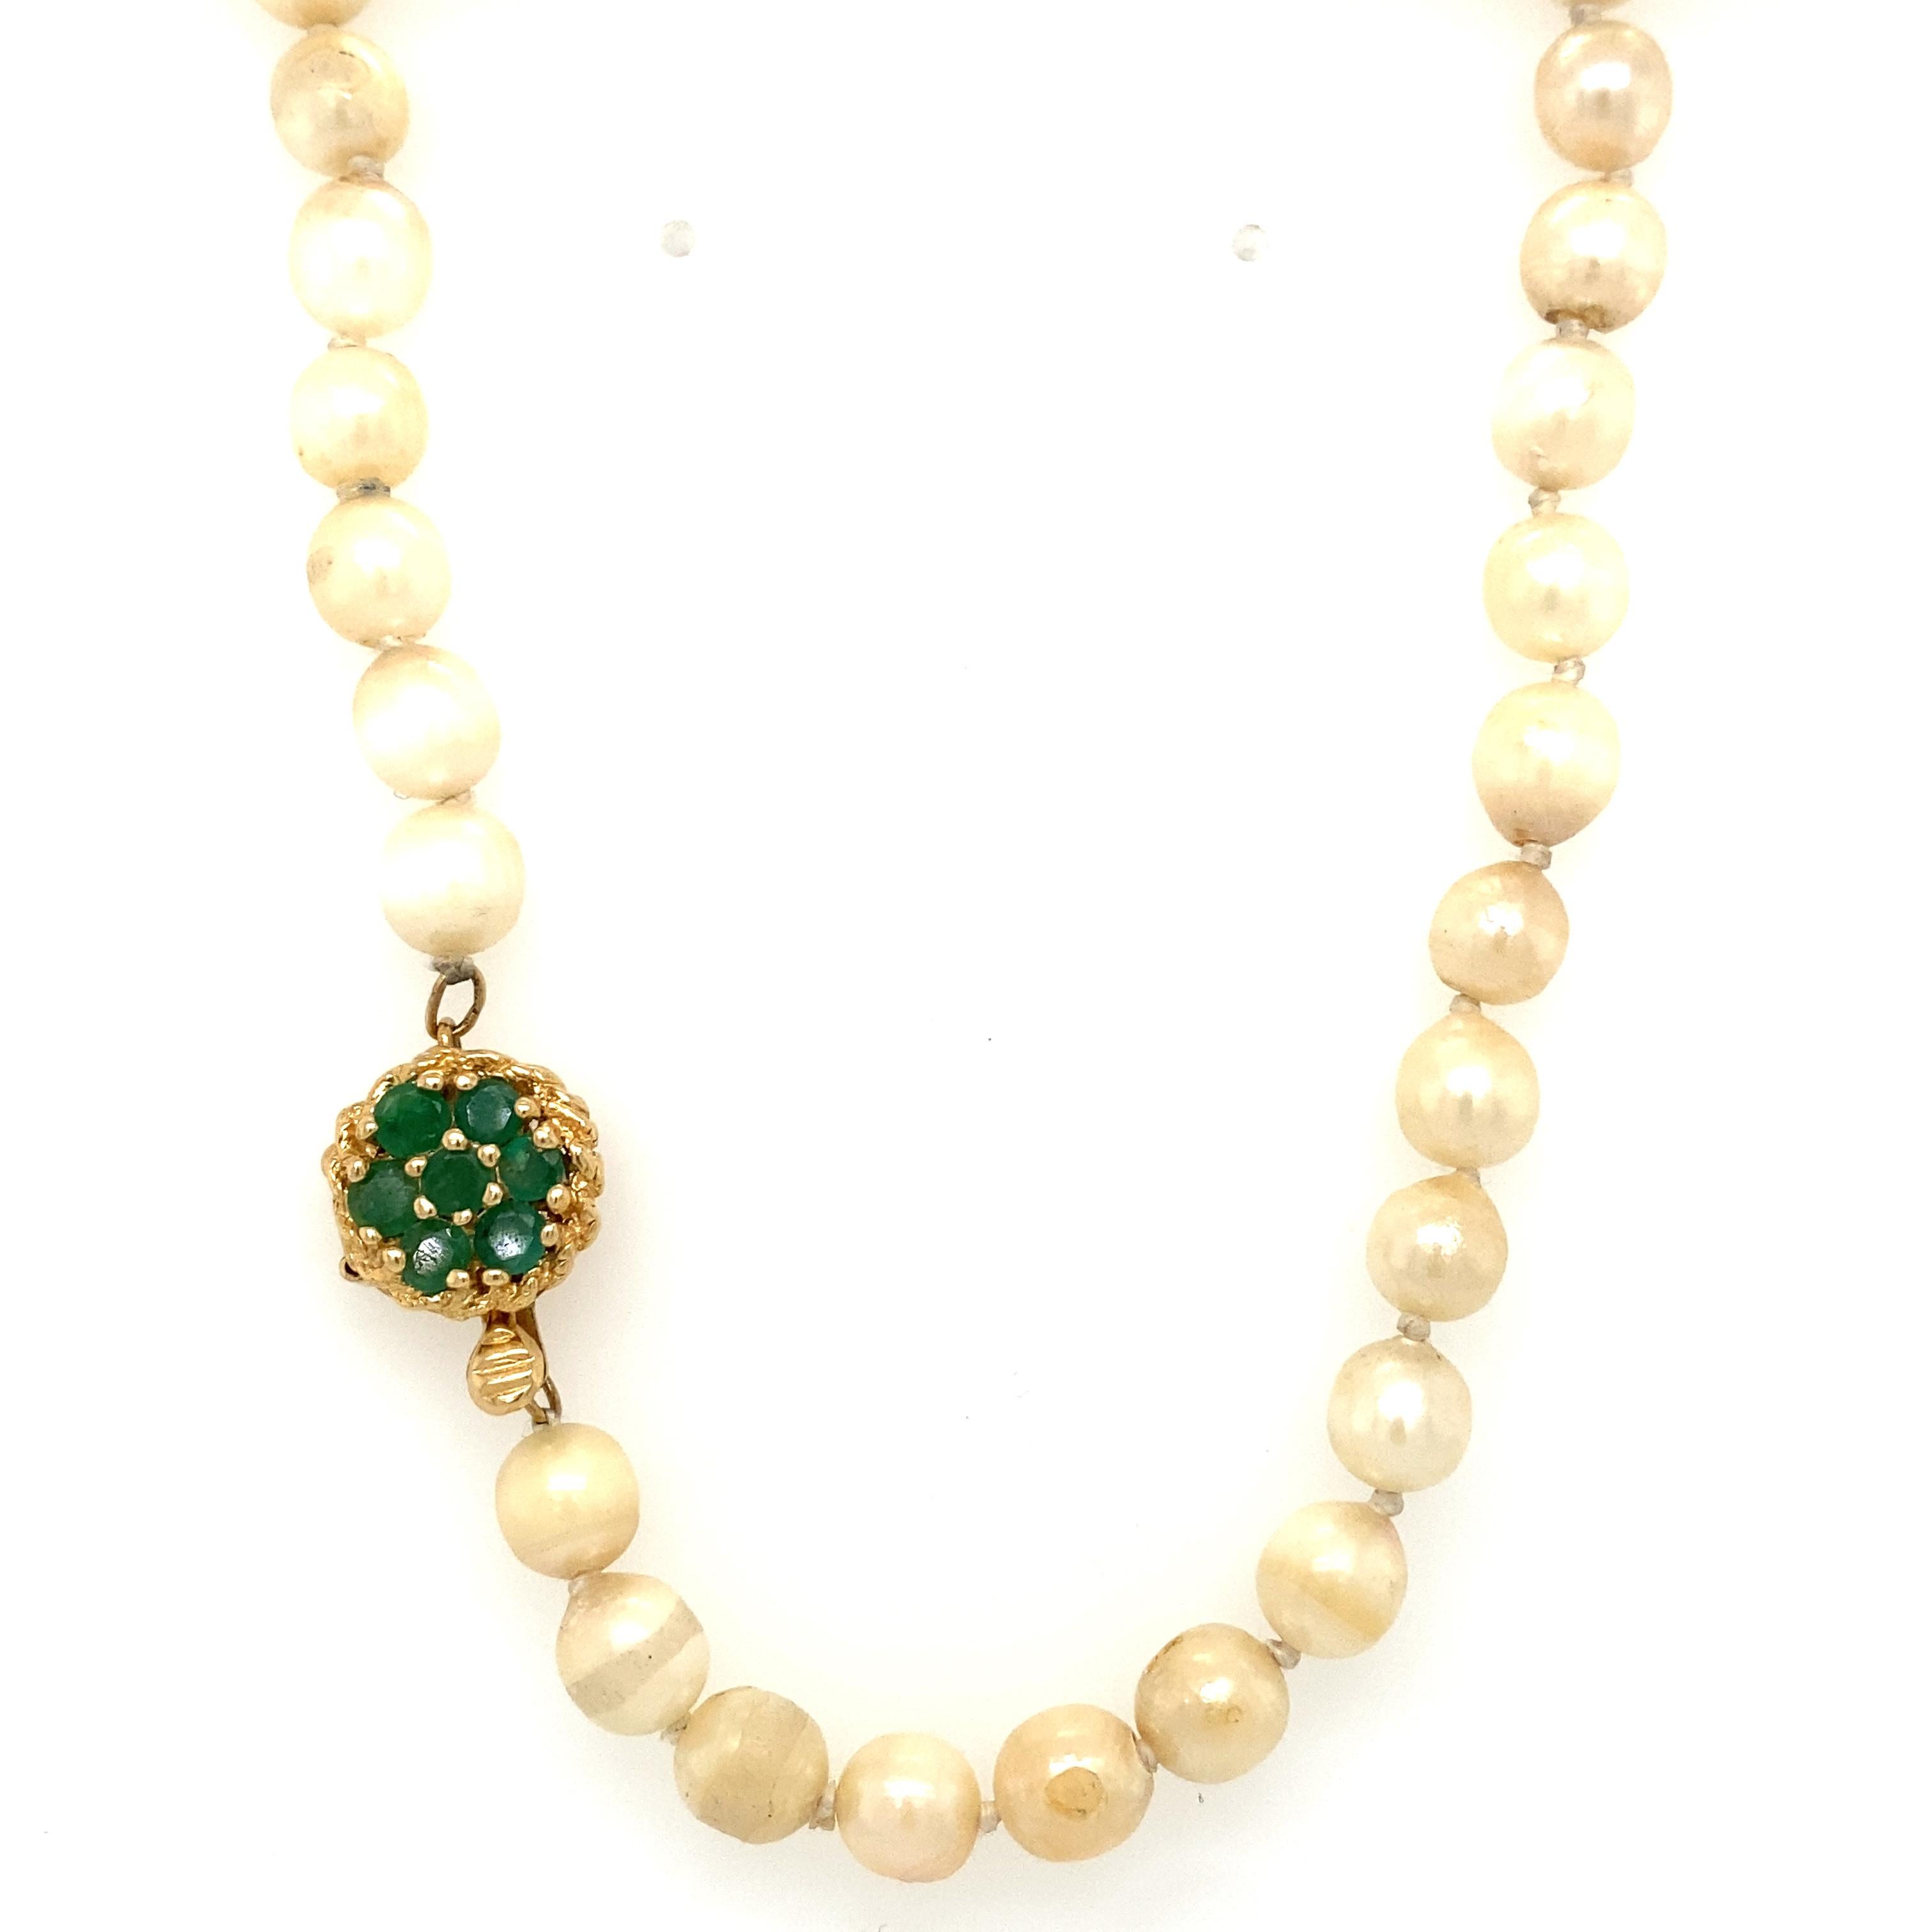 Détails de l'article : Ce collier de perles en forme de tour de cou a un fermoir avec des émeraudes vertes vibrantes. Il s'agit d'une belle pièce vintage qui constitue un excellent cadeau.

Circa : 1960
Type de métal : Or jaune 14 carats
Poids :